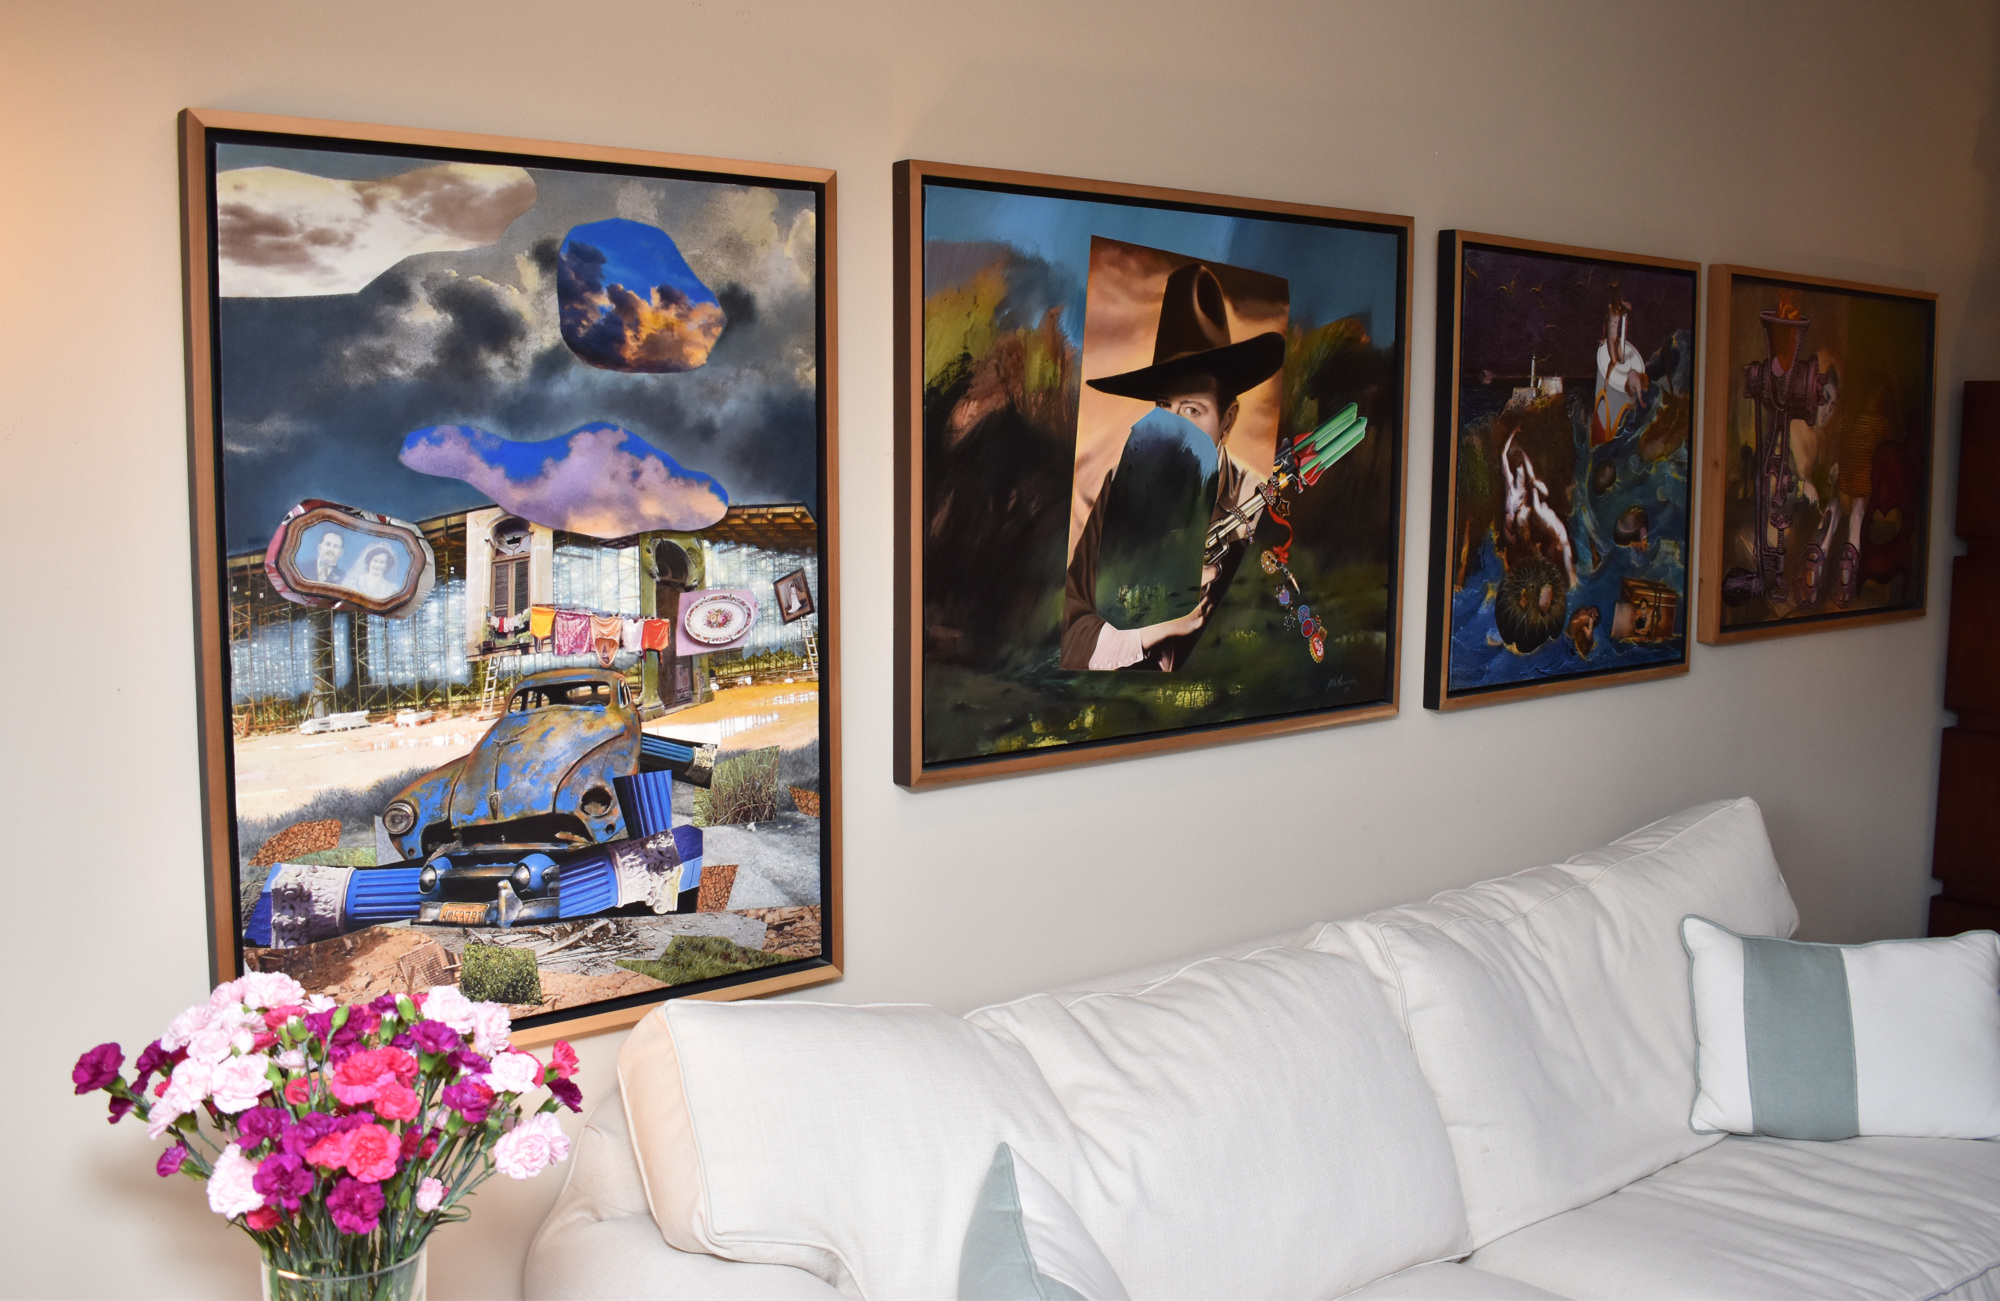 Jorge Reynardus owns many colorful works including Aldo Menéndez’s “The House Cuba” (far left). Photo by Niki Kottmann